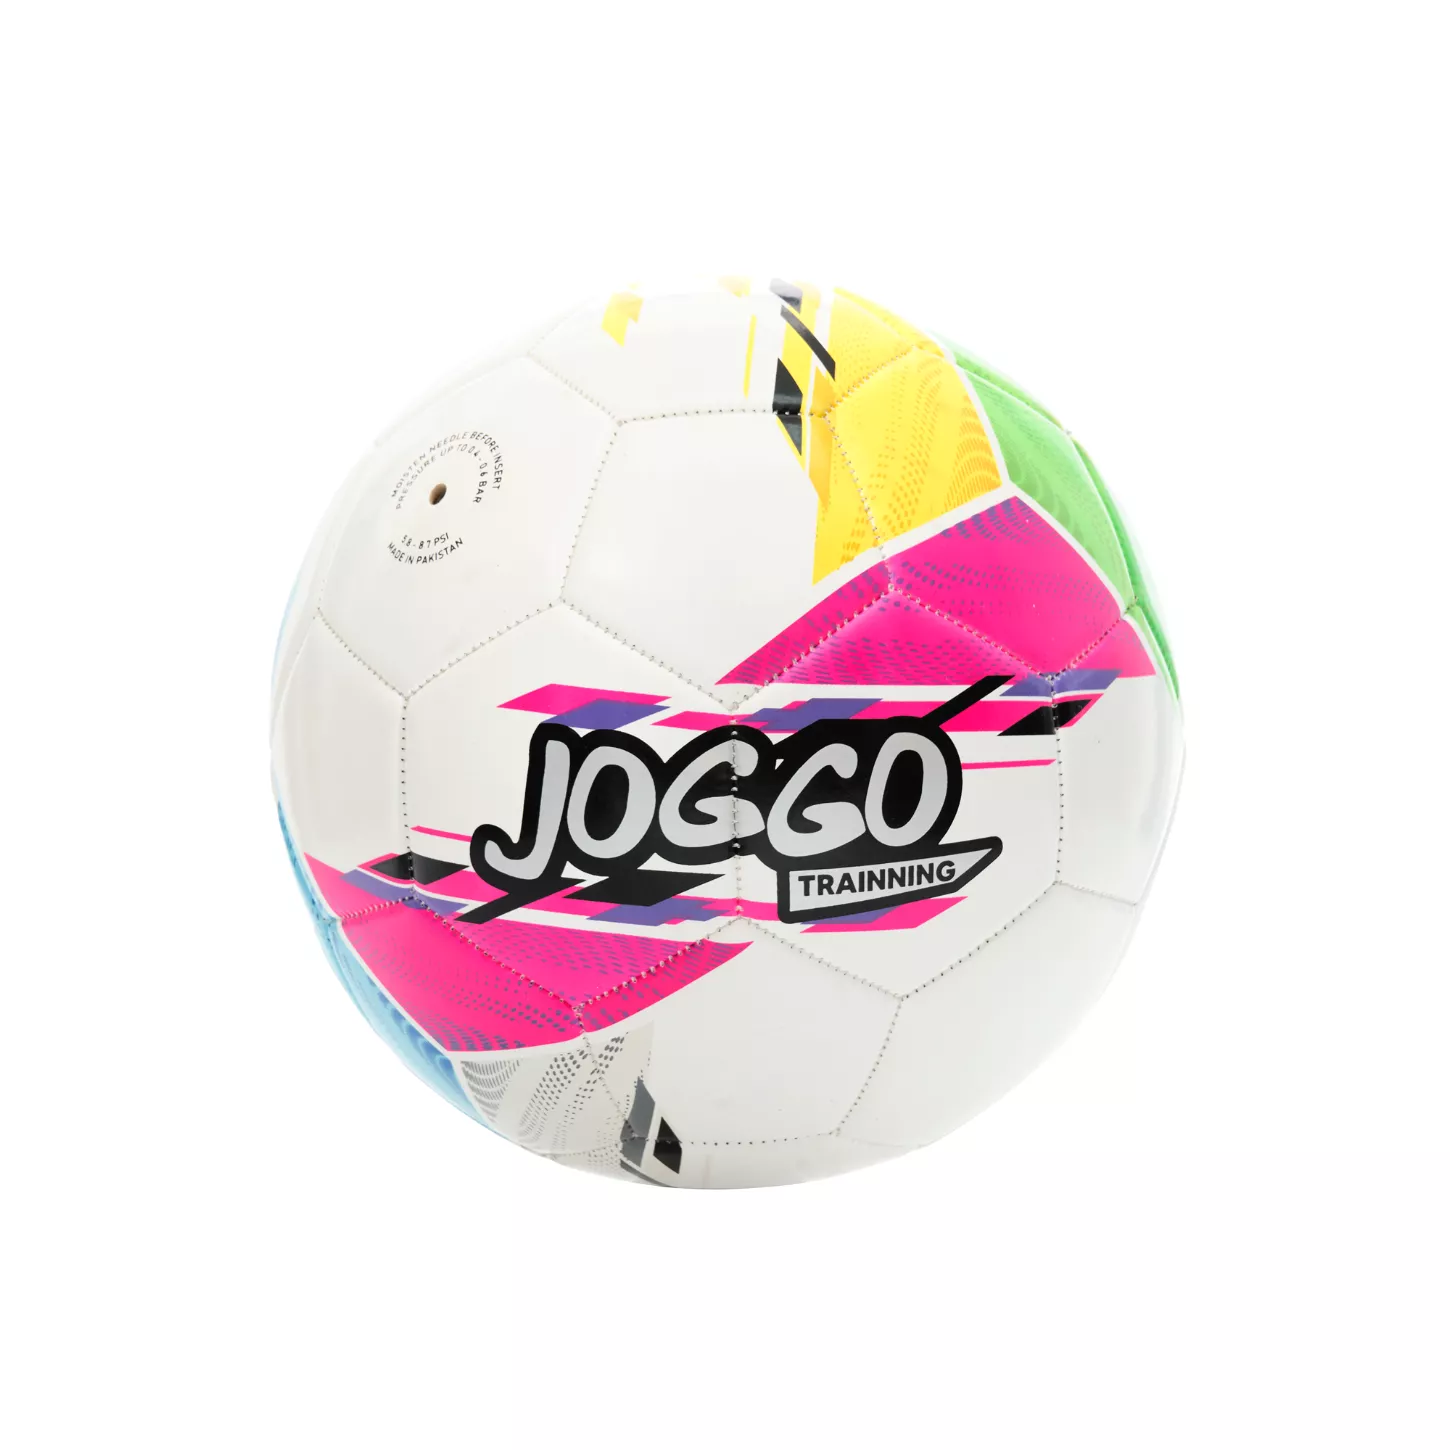 JOGGO TRAINNING Balón de Fútbol para Todo Clima WM-D1